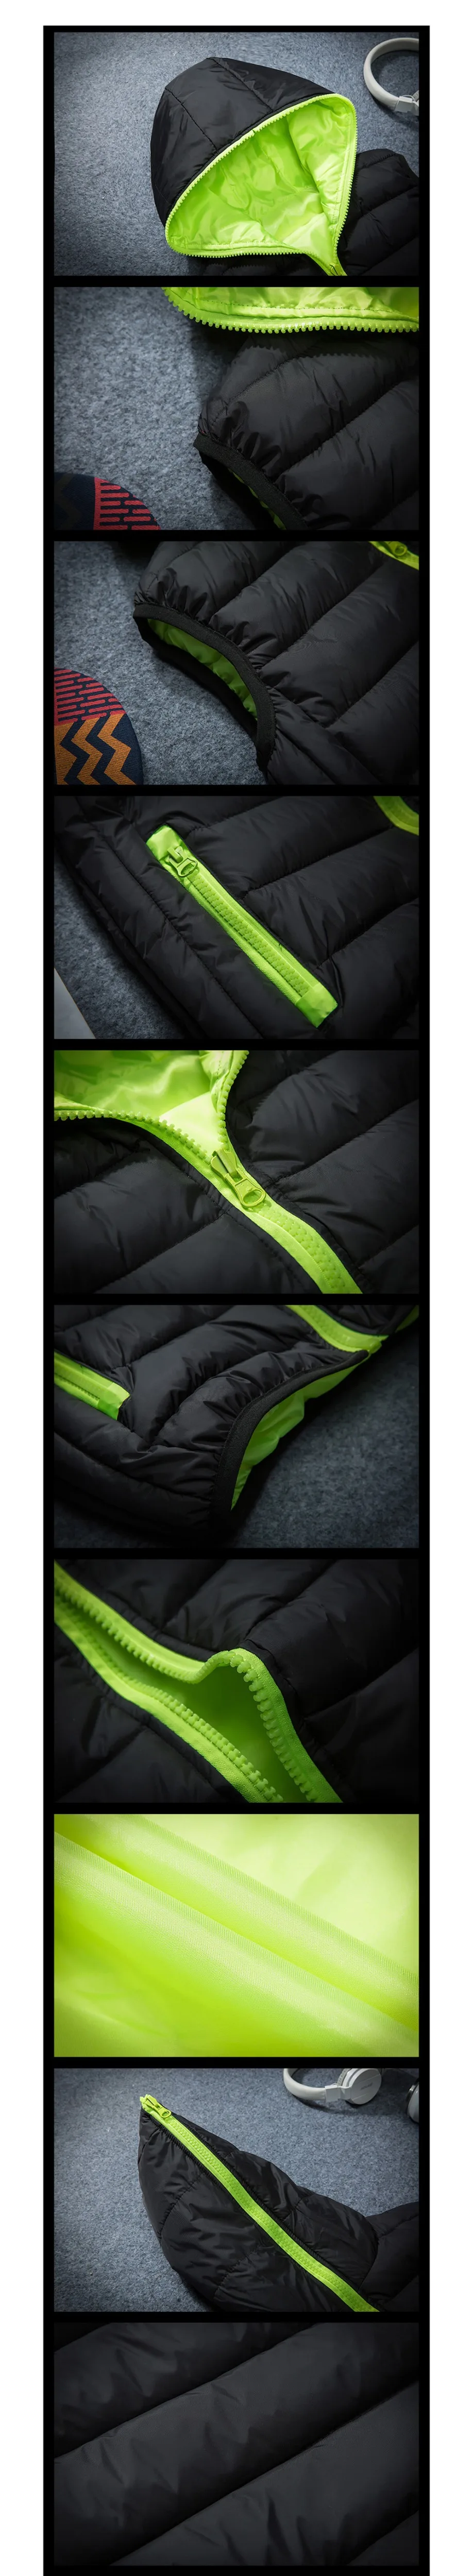 DIMUSI мужская куртка без рукавов жилет зимний модный Мужской Хлопковый стеганый утепленный жилет мужской жилет куртки одежда 4XL, YA980